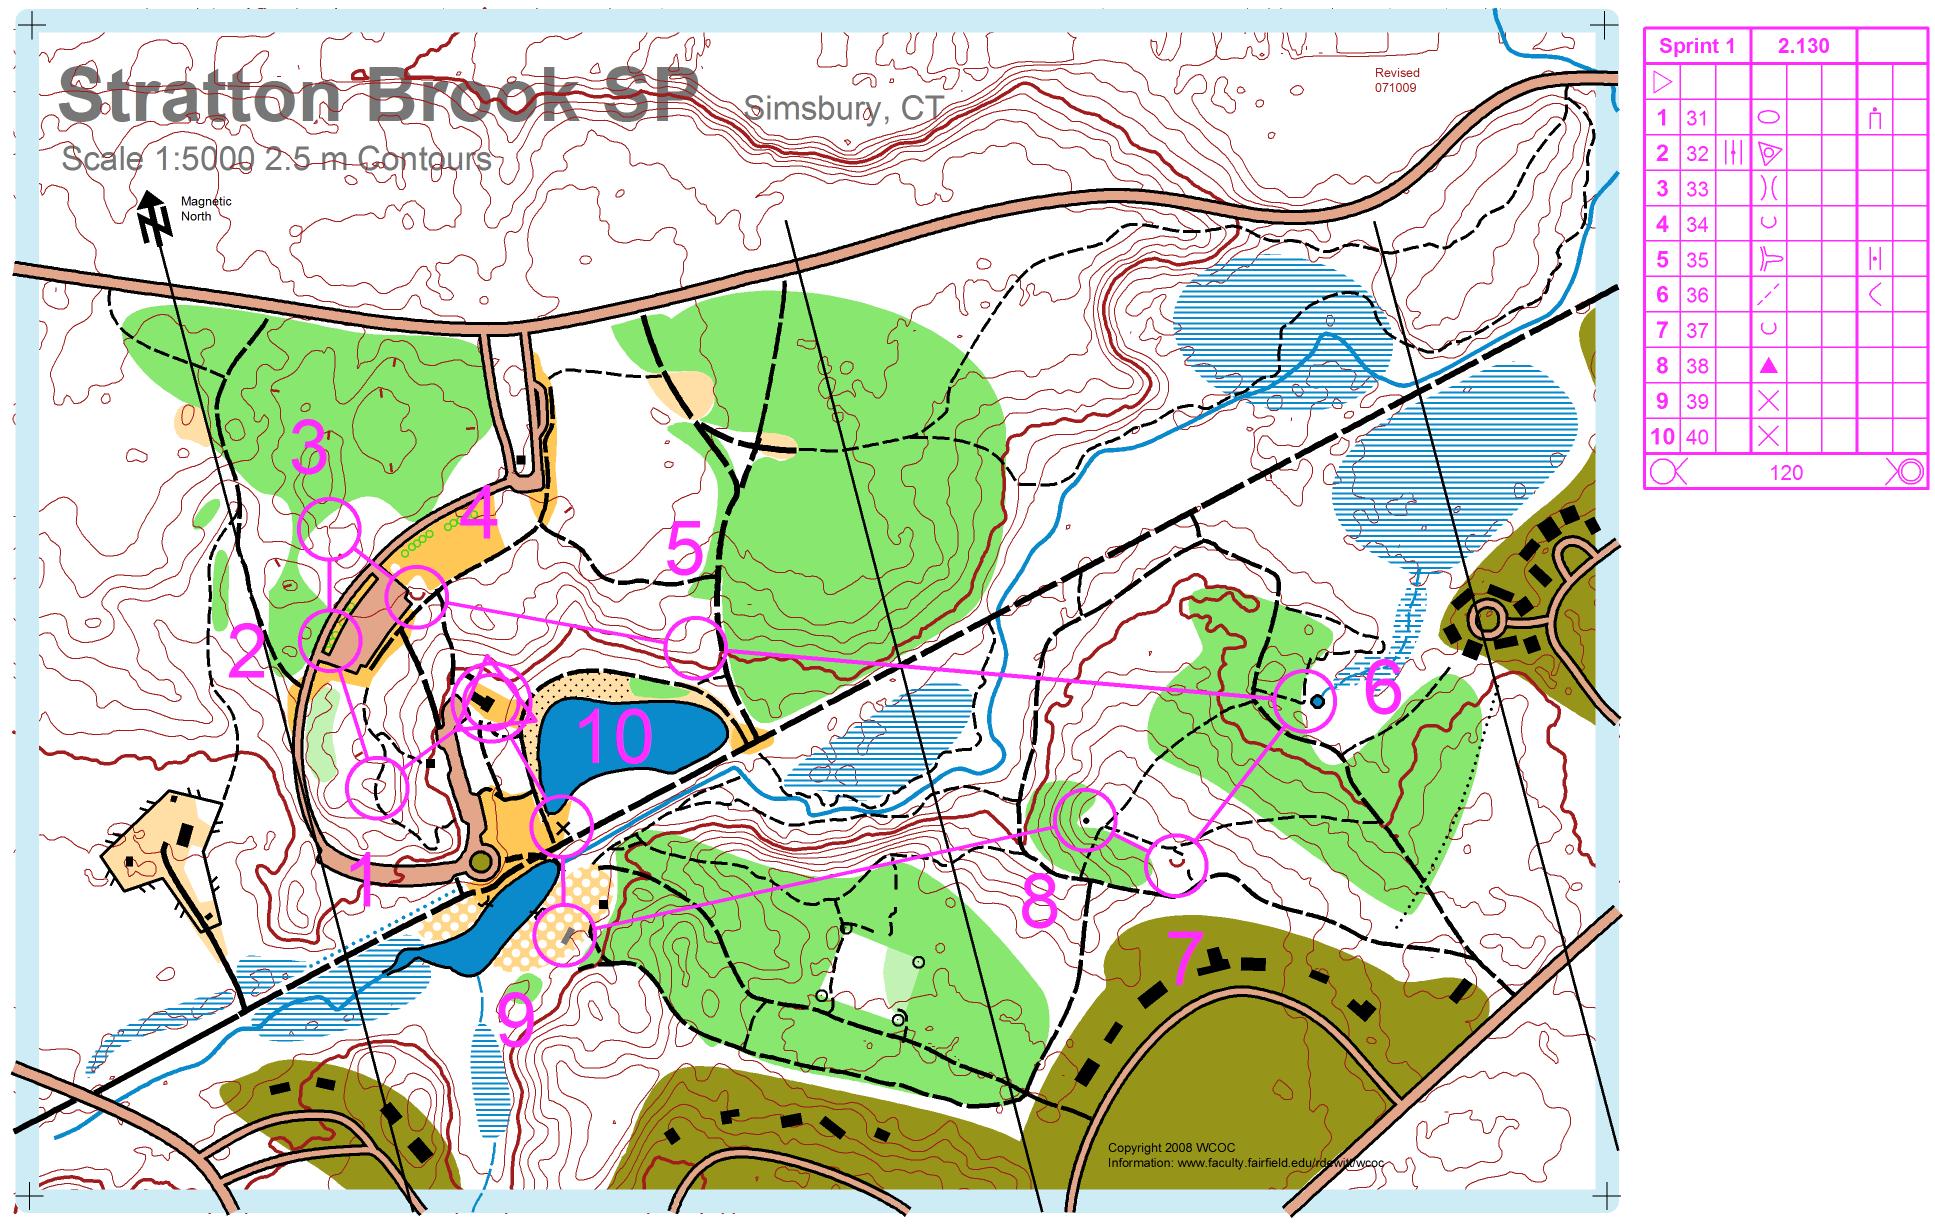 Stratton Brook Sprint 1 (16.09.2009)